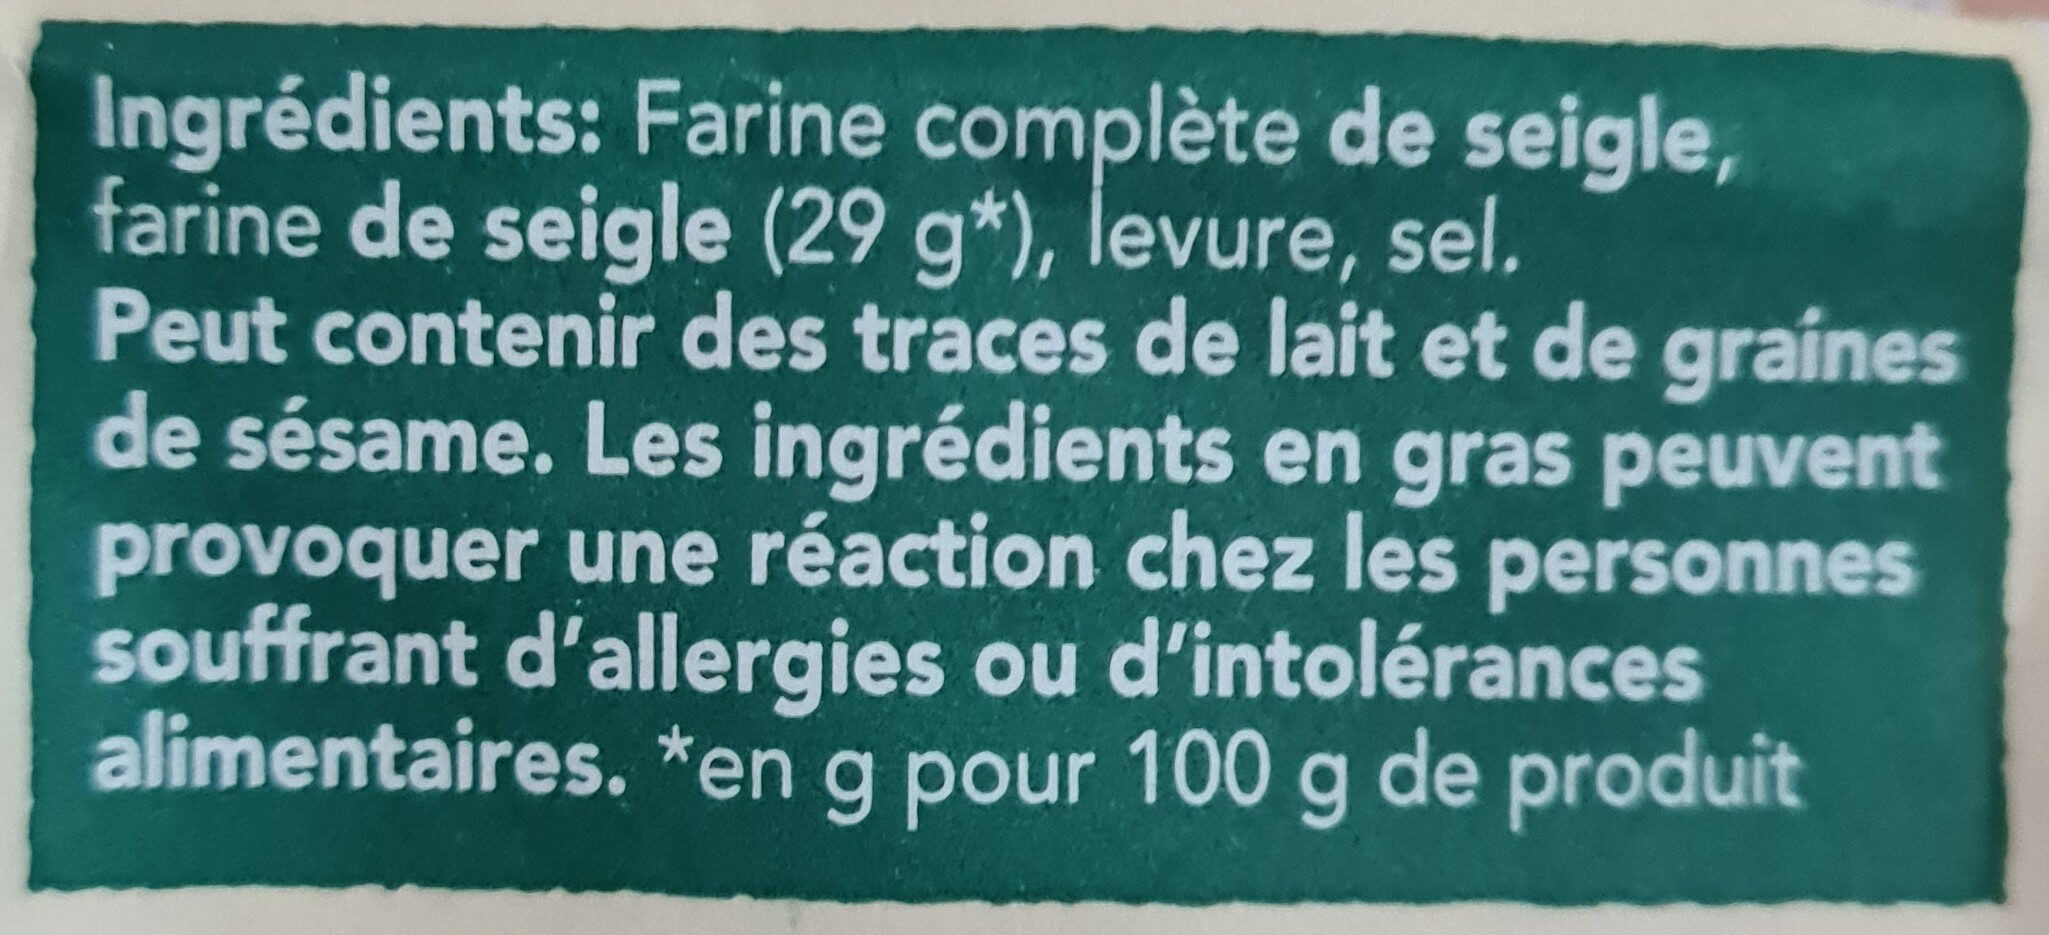 Wasa tartine croustillante authentique au seigle - Ingredients - fr